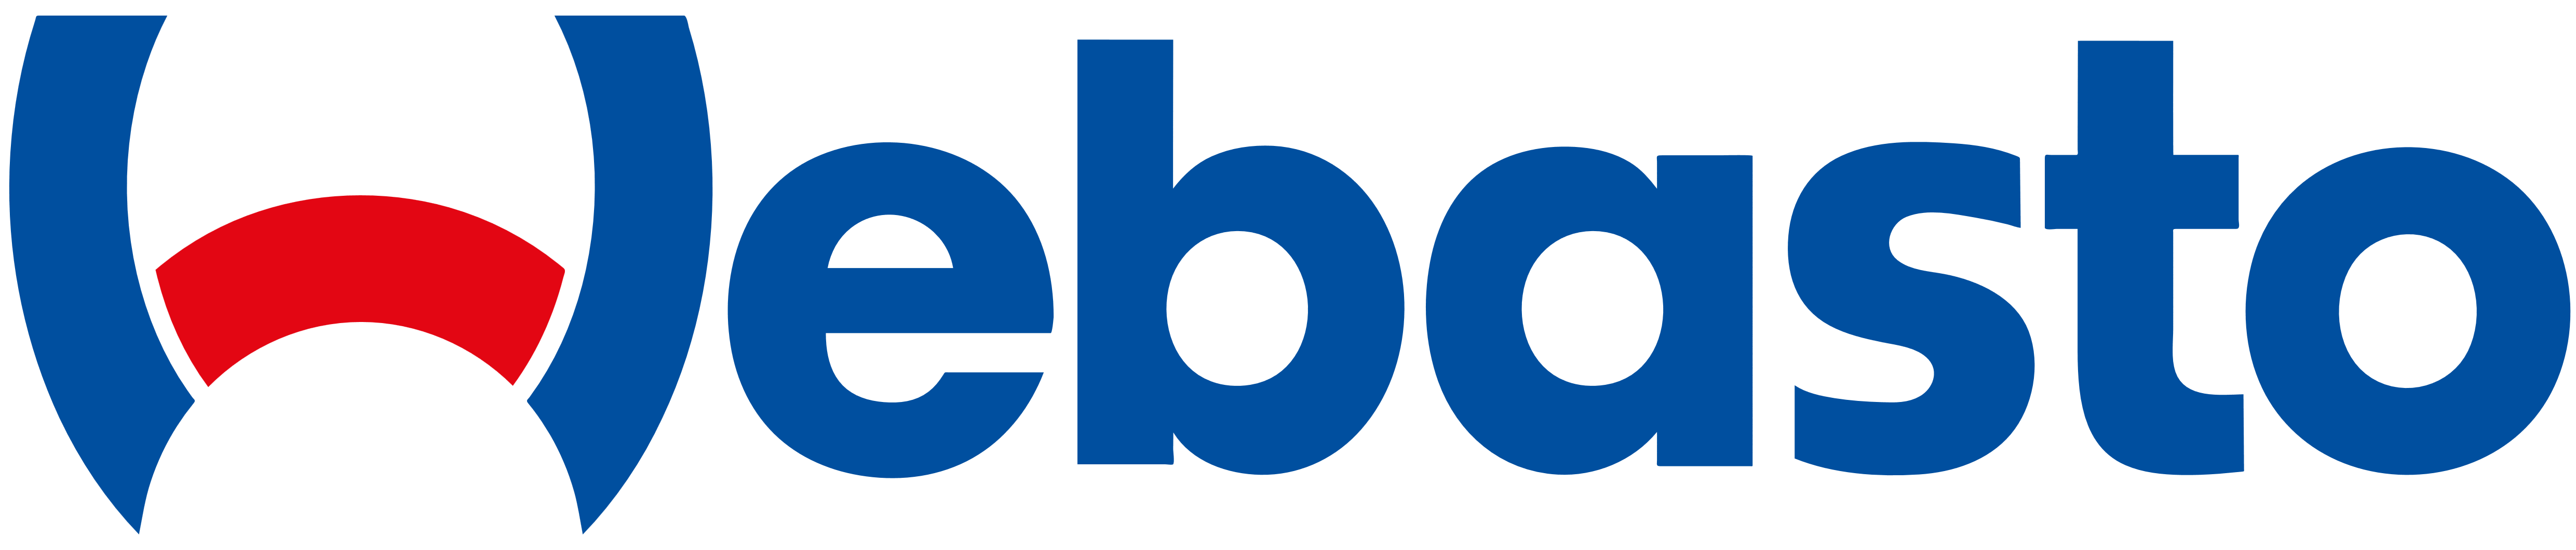 Webasto Logo - Webasto – Logos Download